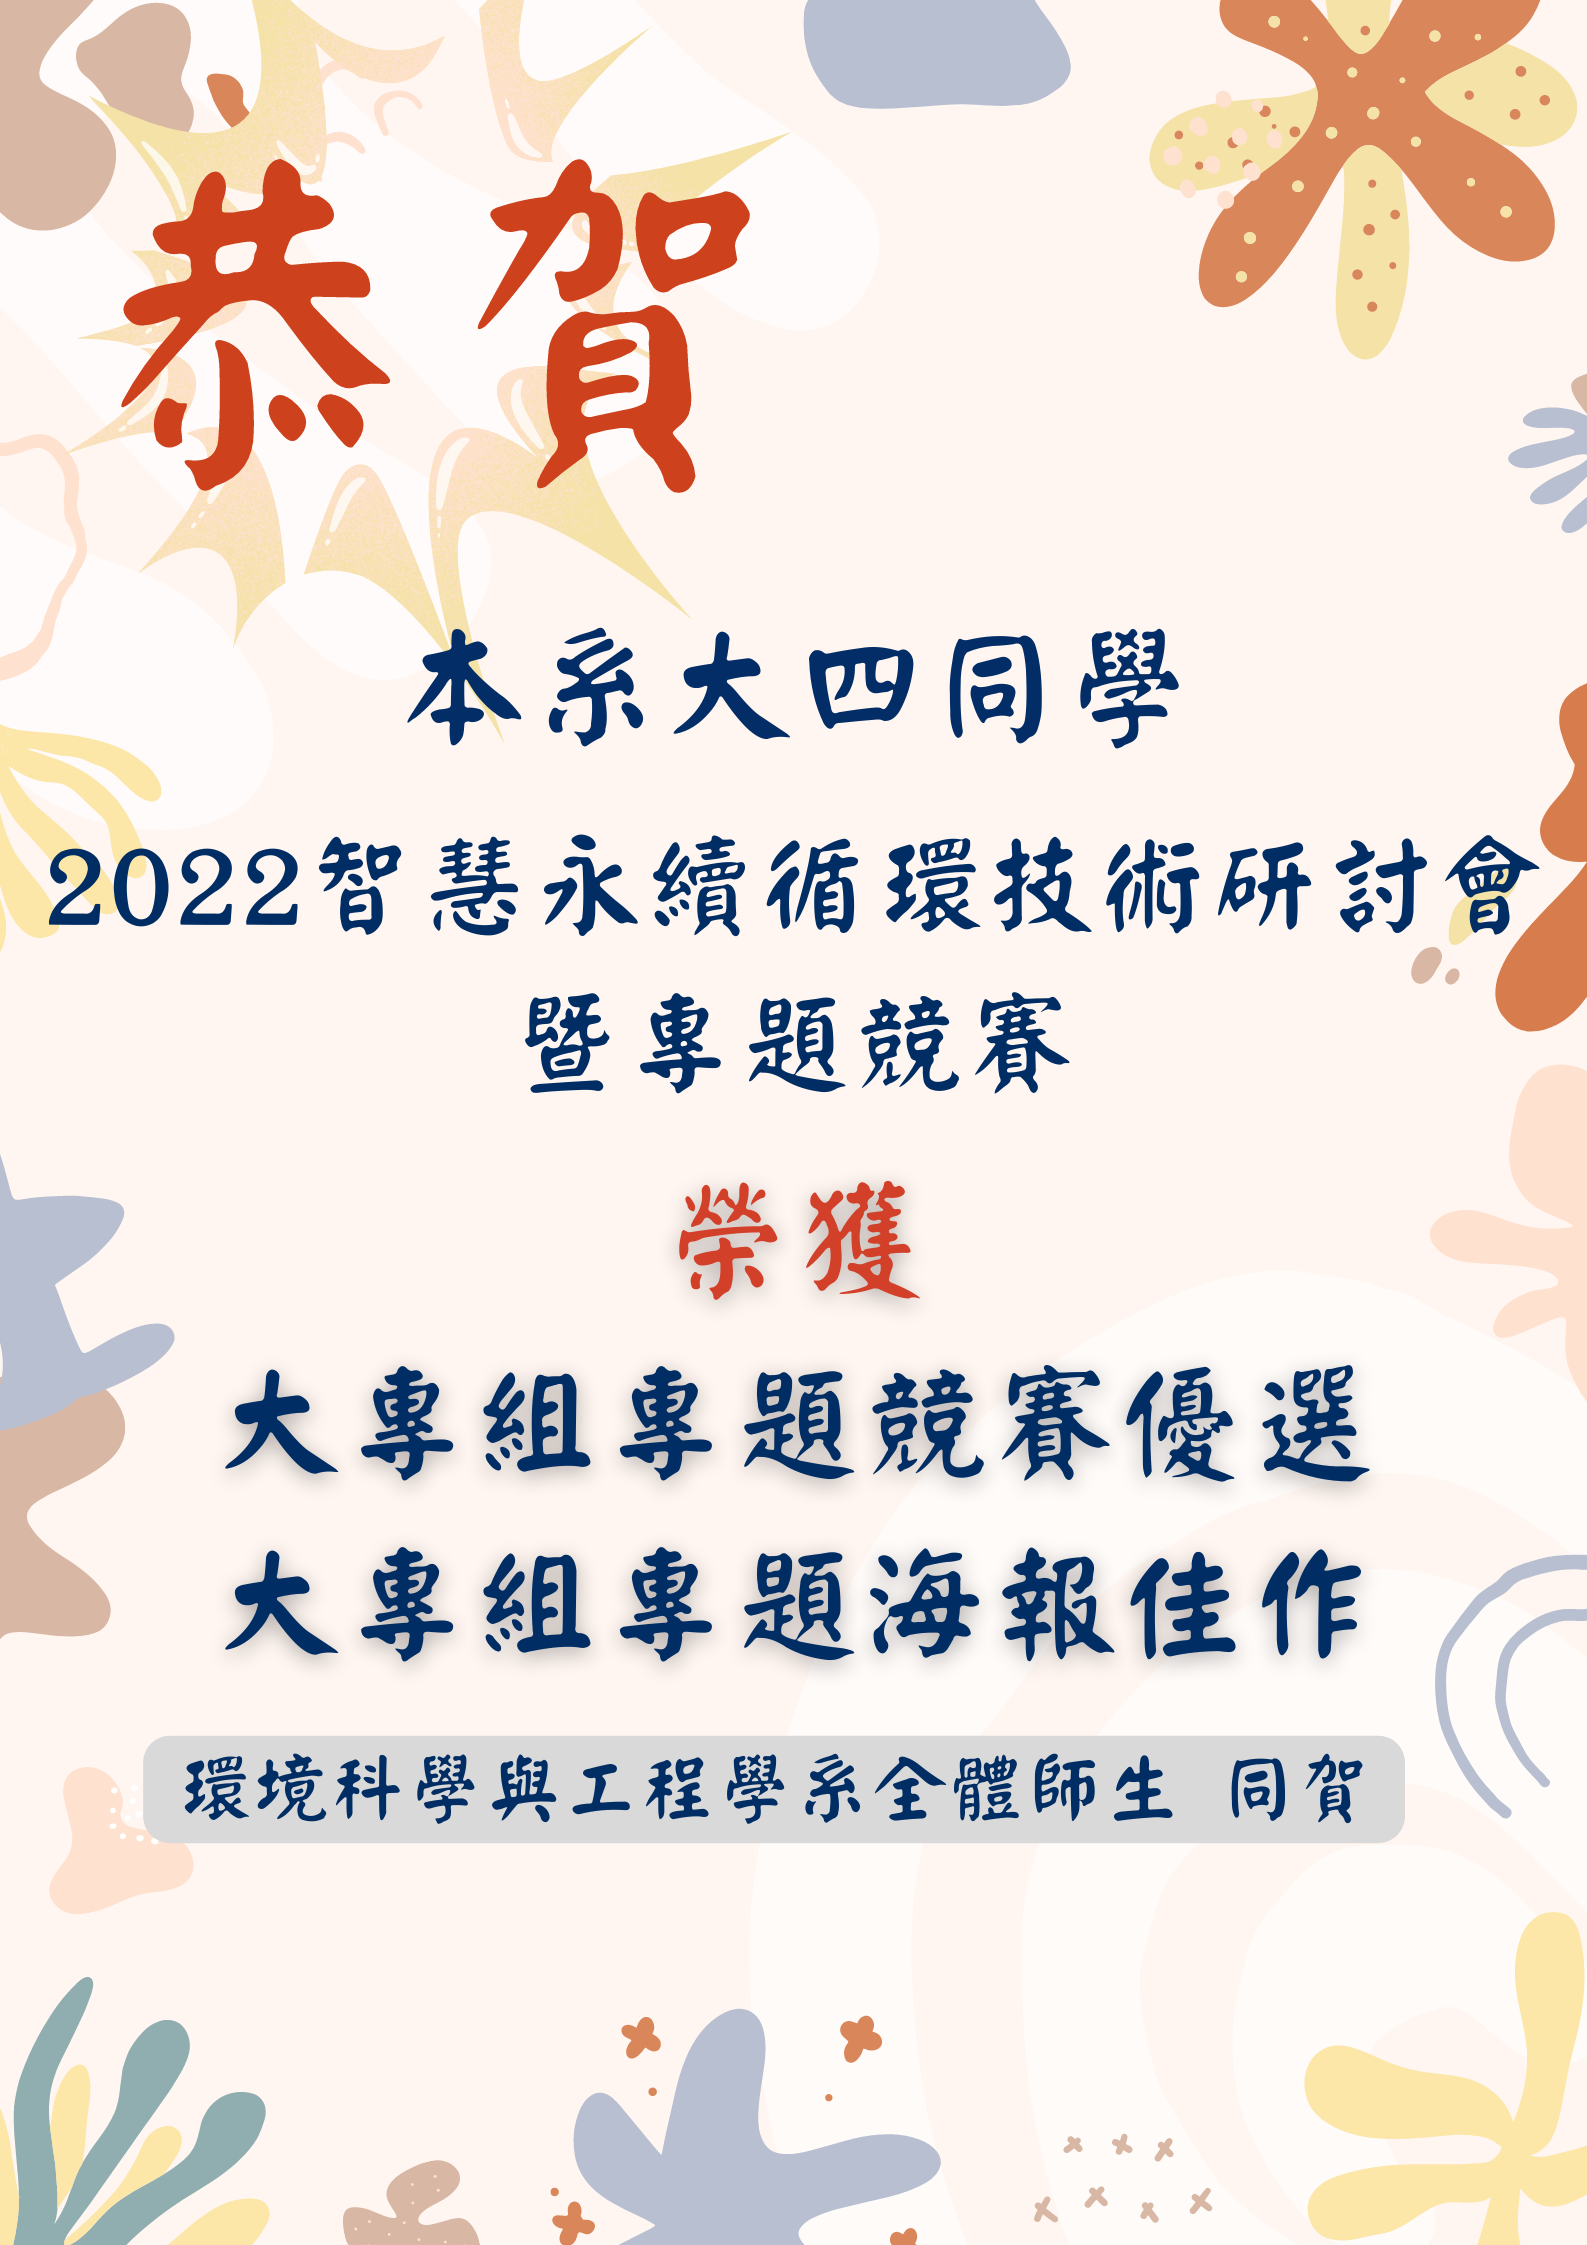 2022智慧永續循環技術研討會暨專題競賽